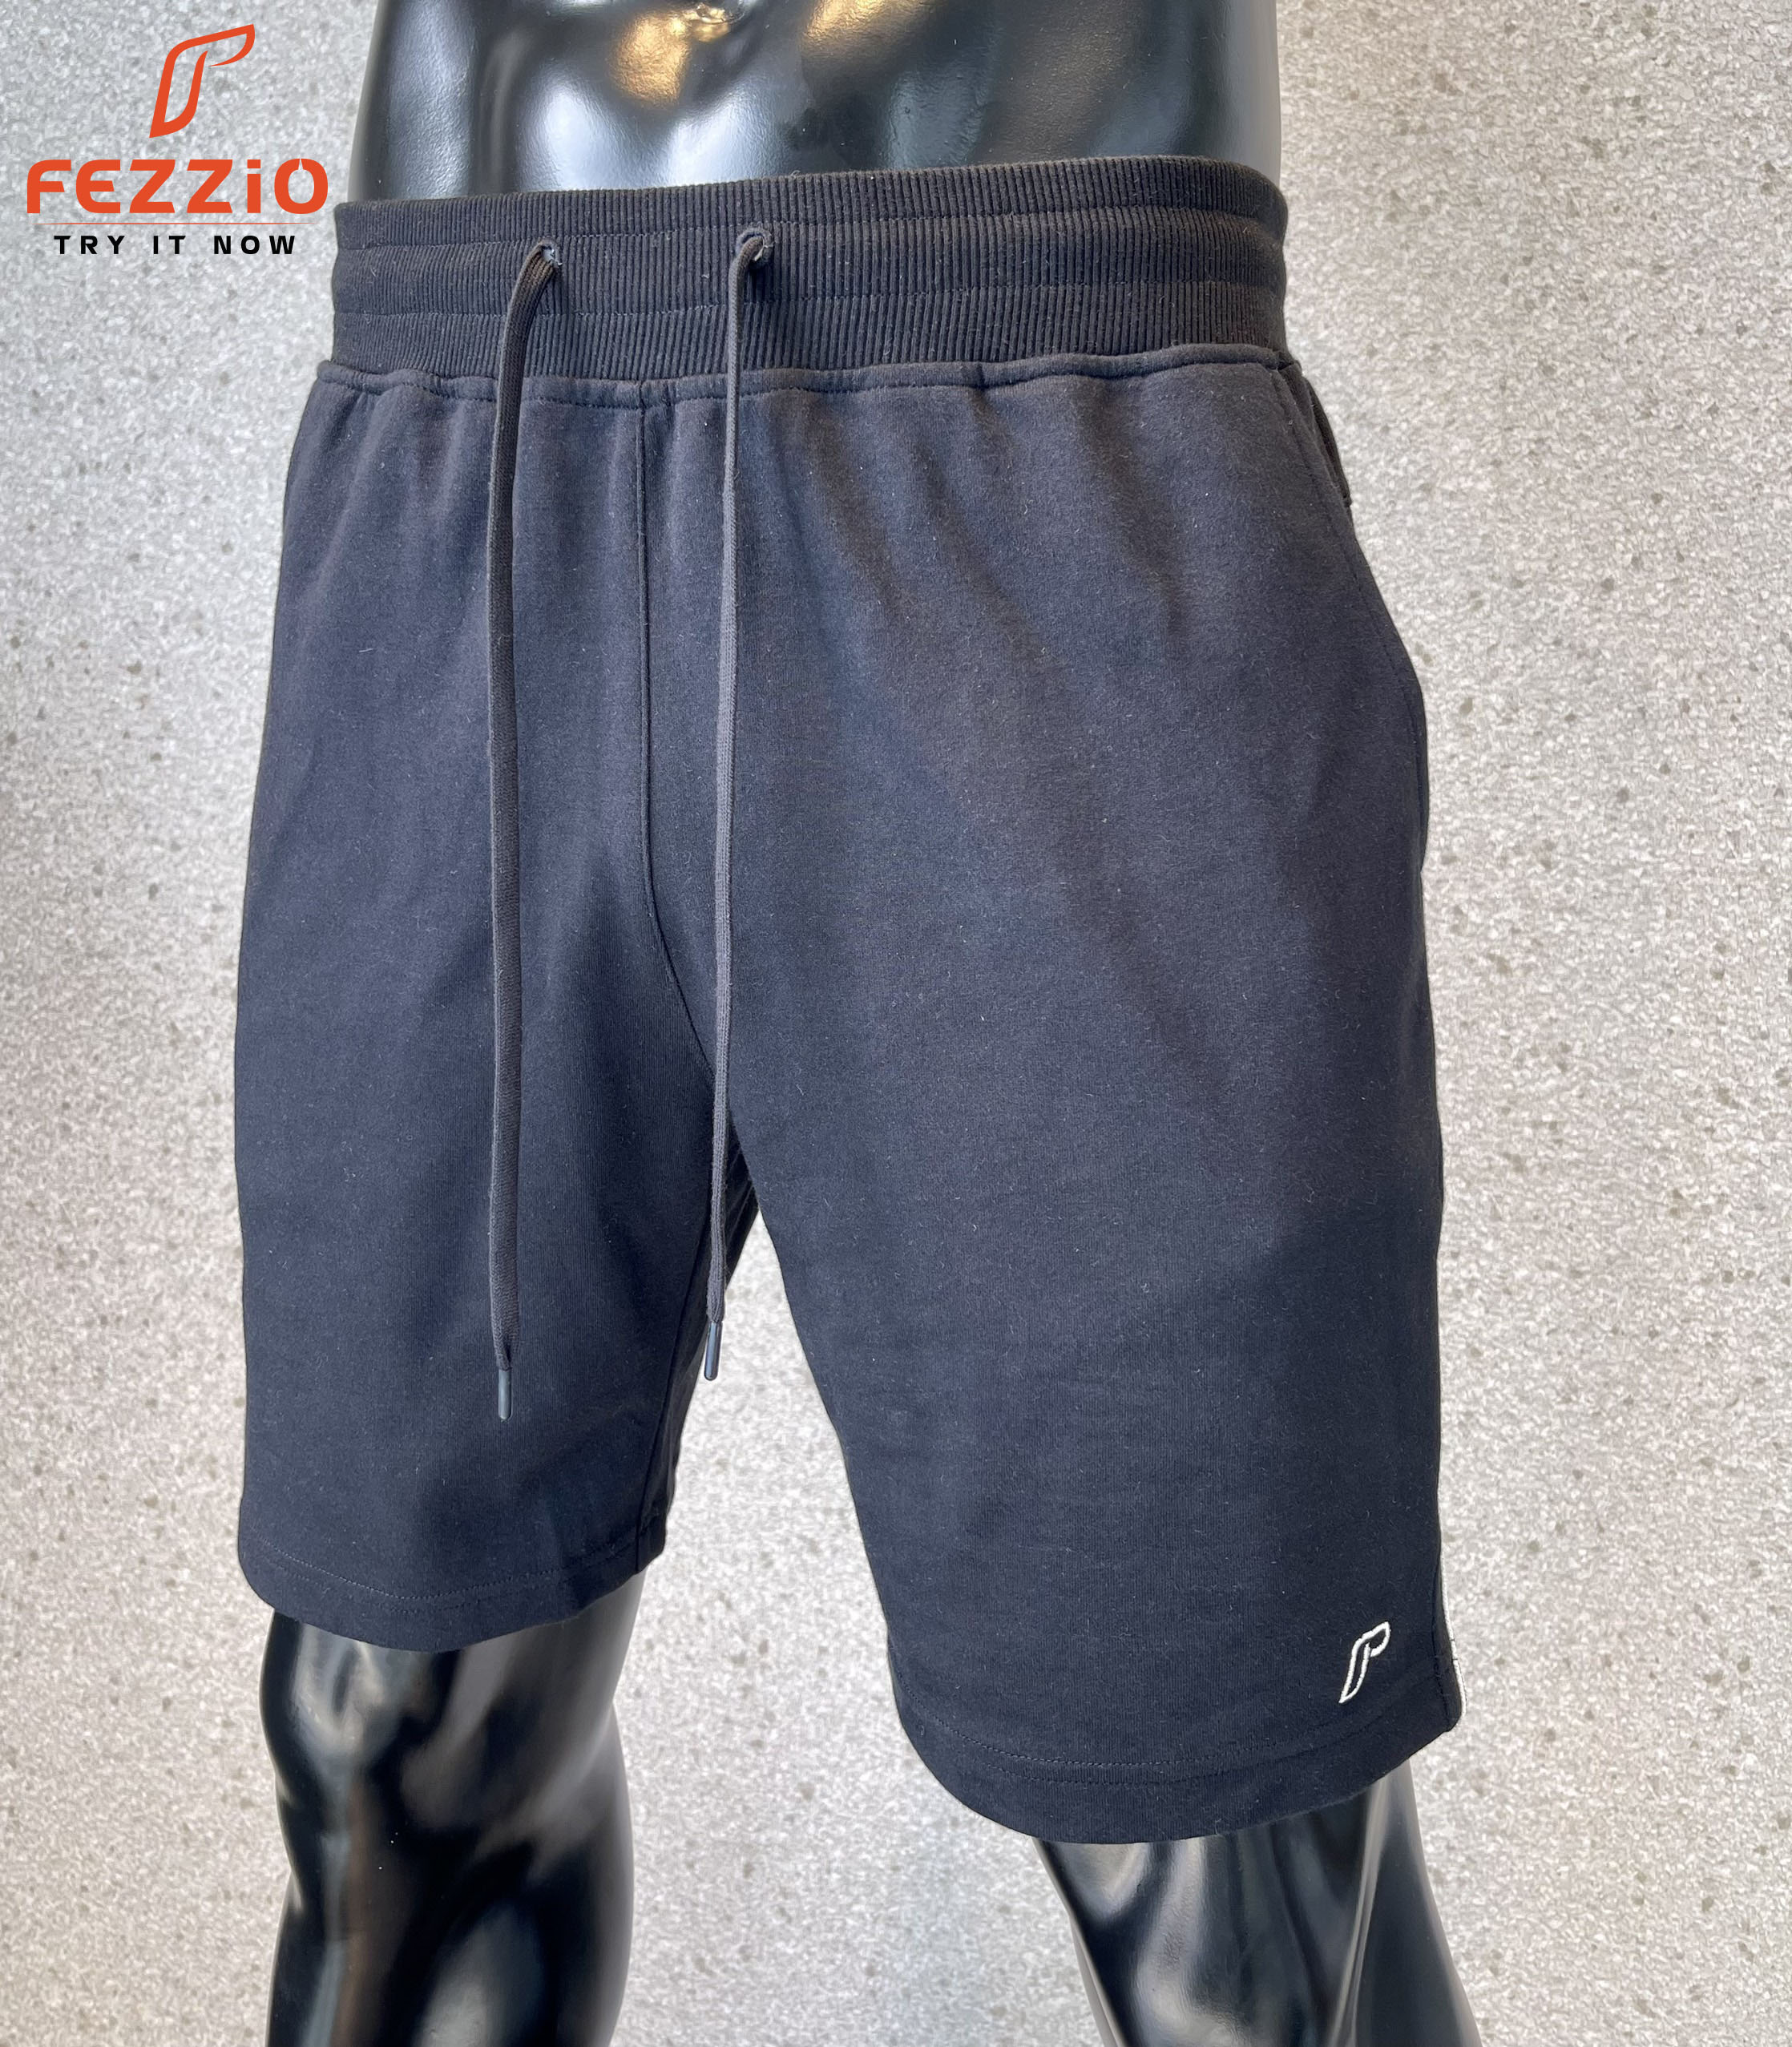 Quần short thể thao nam chất thun 100% cotton kiểu dáng trẻ trung trên gối thương hiệu Fezzio